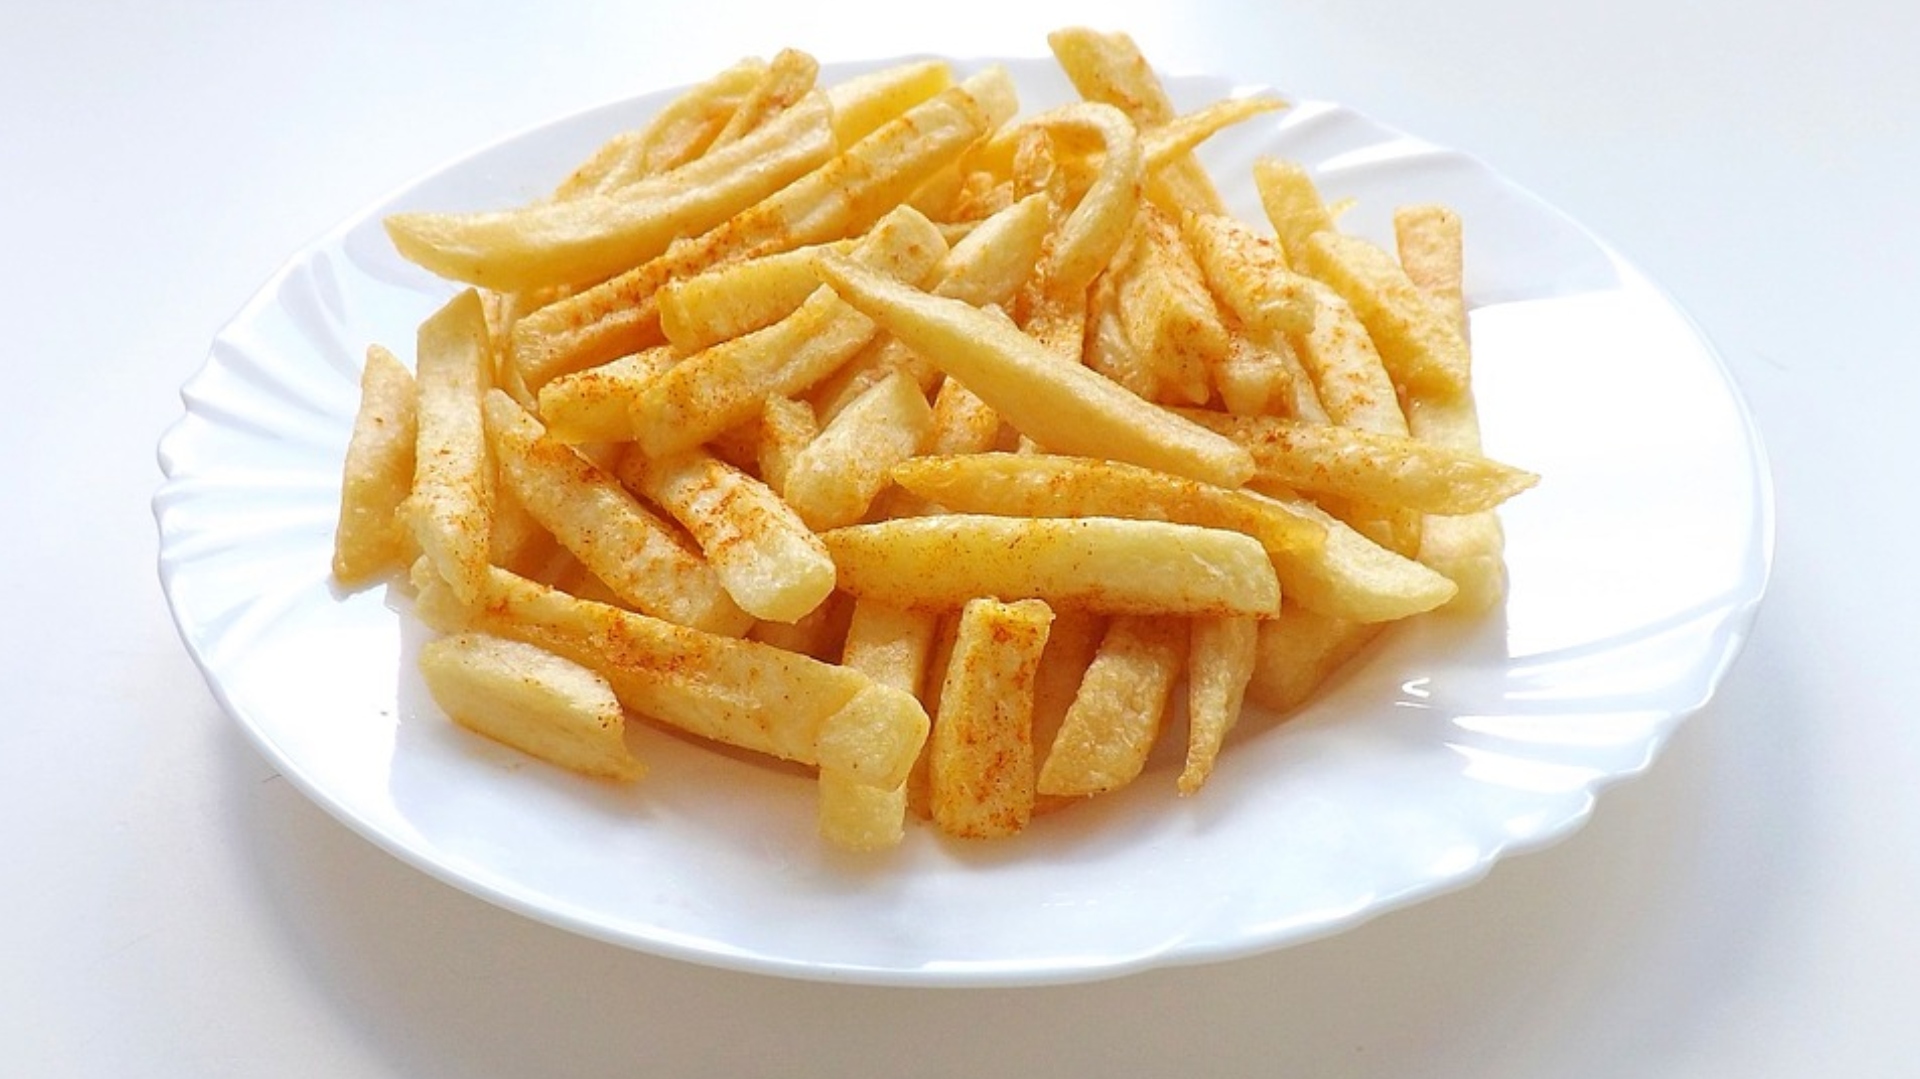 El consumo mundial de papas fritas es elevadísimo, sólo por aportar unos datos, se estima que los estadounidenses comen 13 kilos por persona por año (Pixabay)